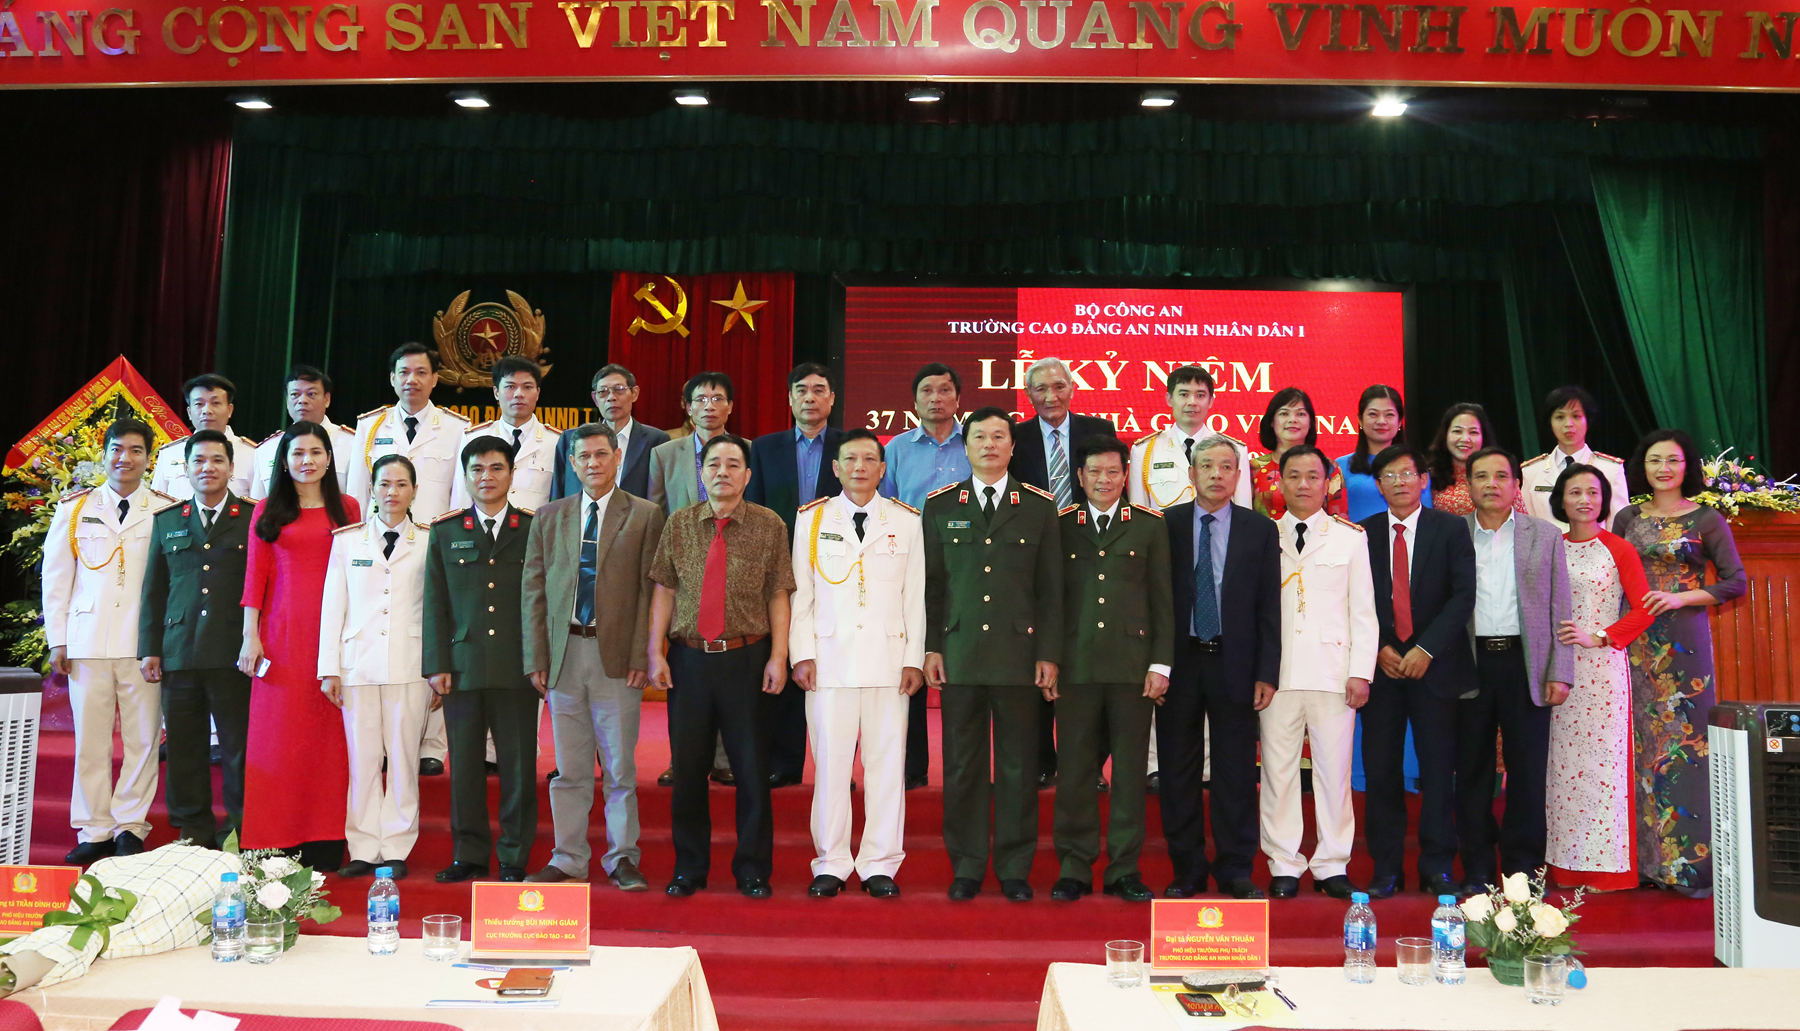 Trường Cao đẳng ANND I tổ chức lễ mít tinh kỷ niệm Ngày Nhà giáo Việt Nam